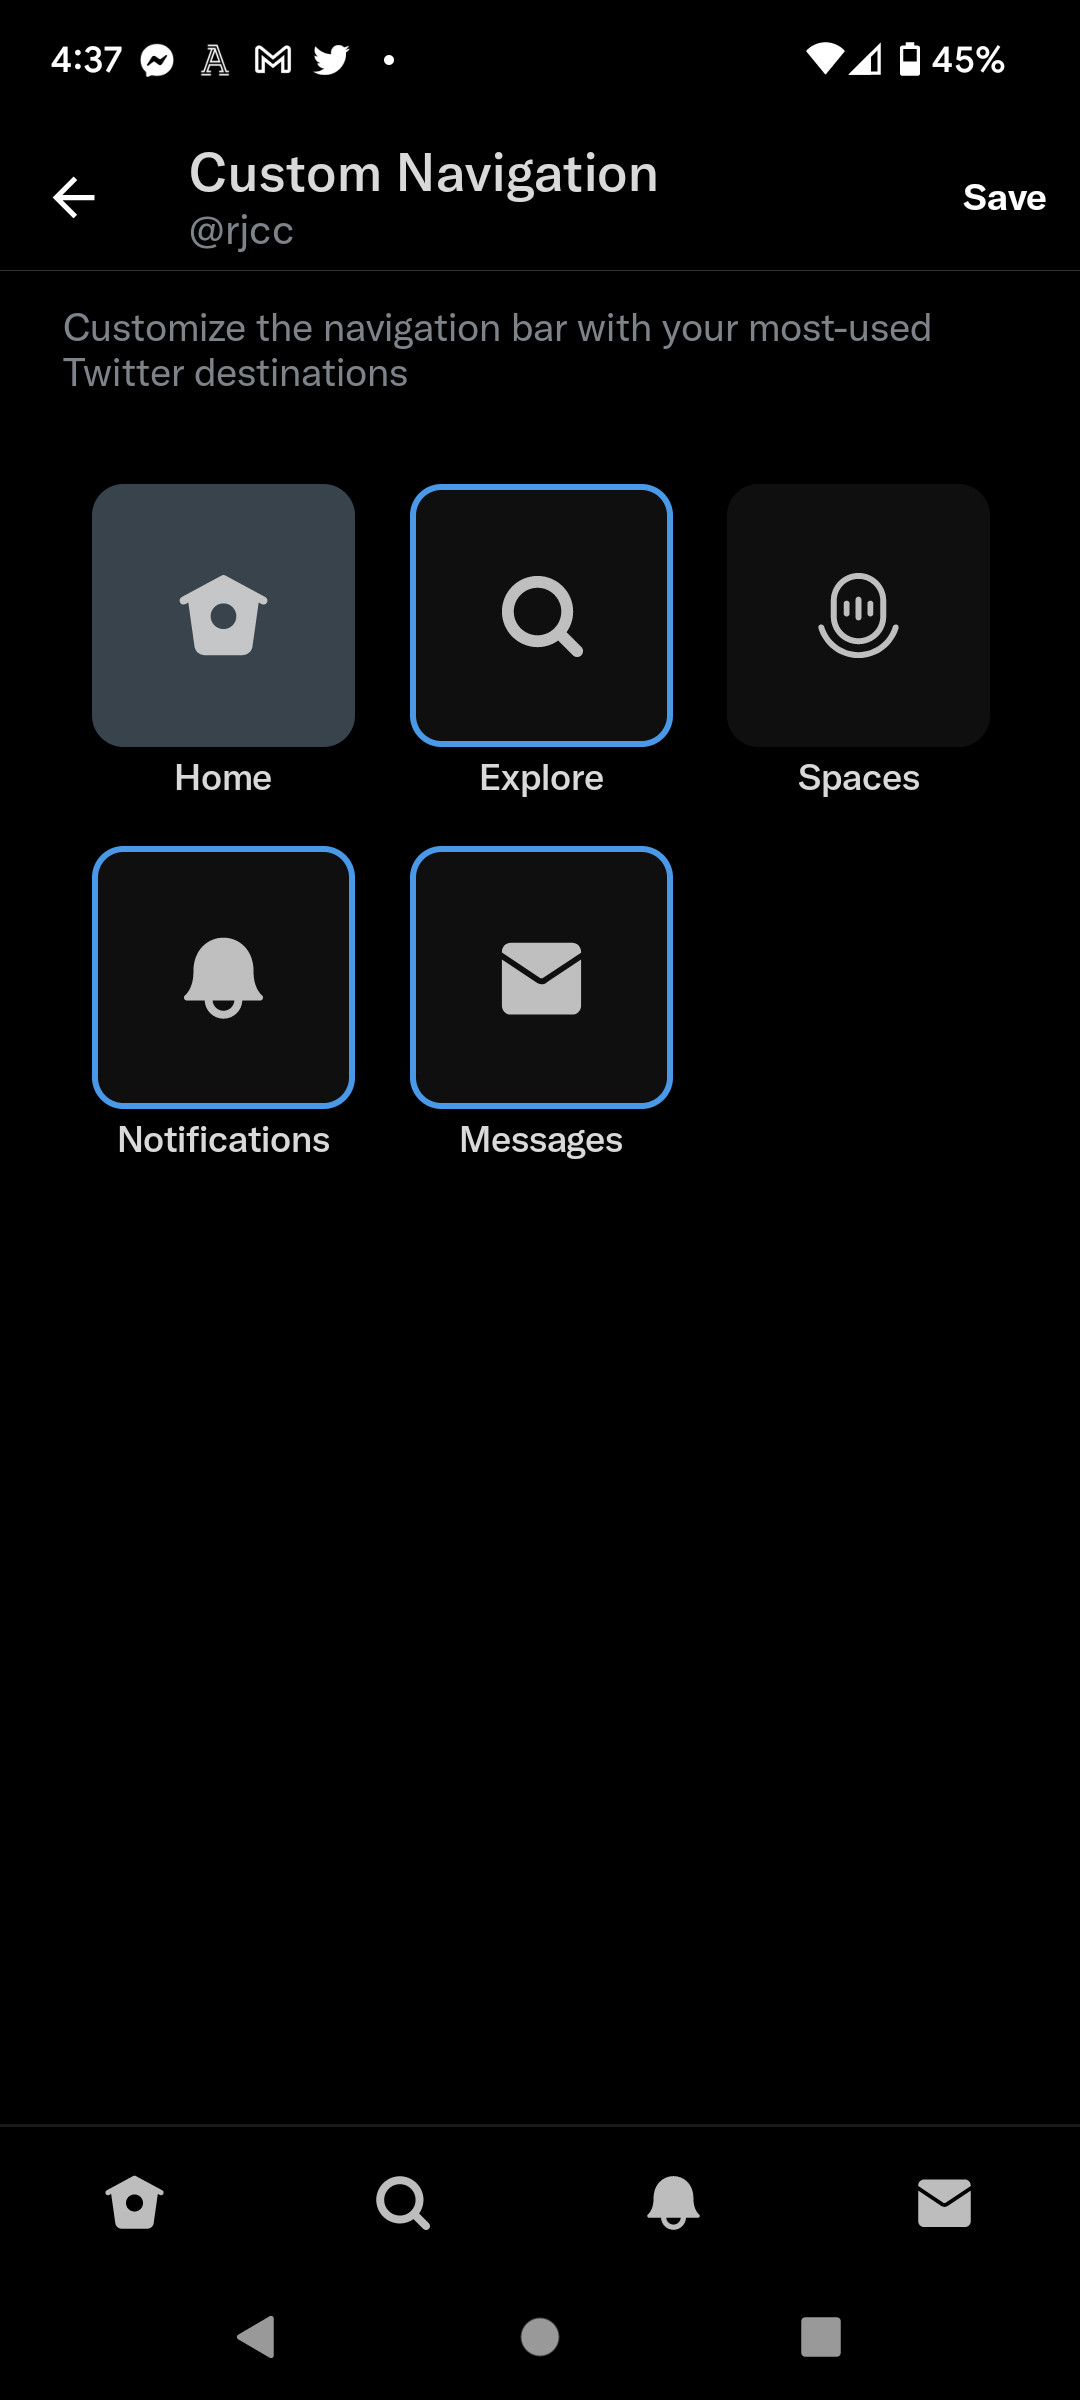 Android'deki Twitter Blue aboneleri artık Spaces sekmesini kaldırmak için ödeme yapabilir